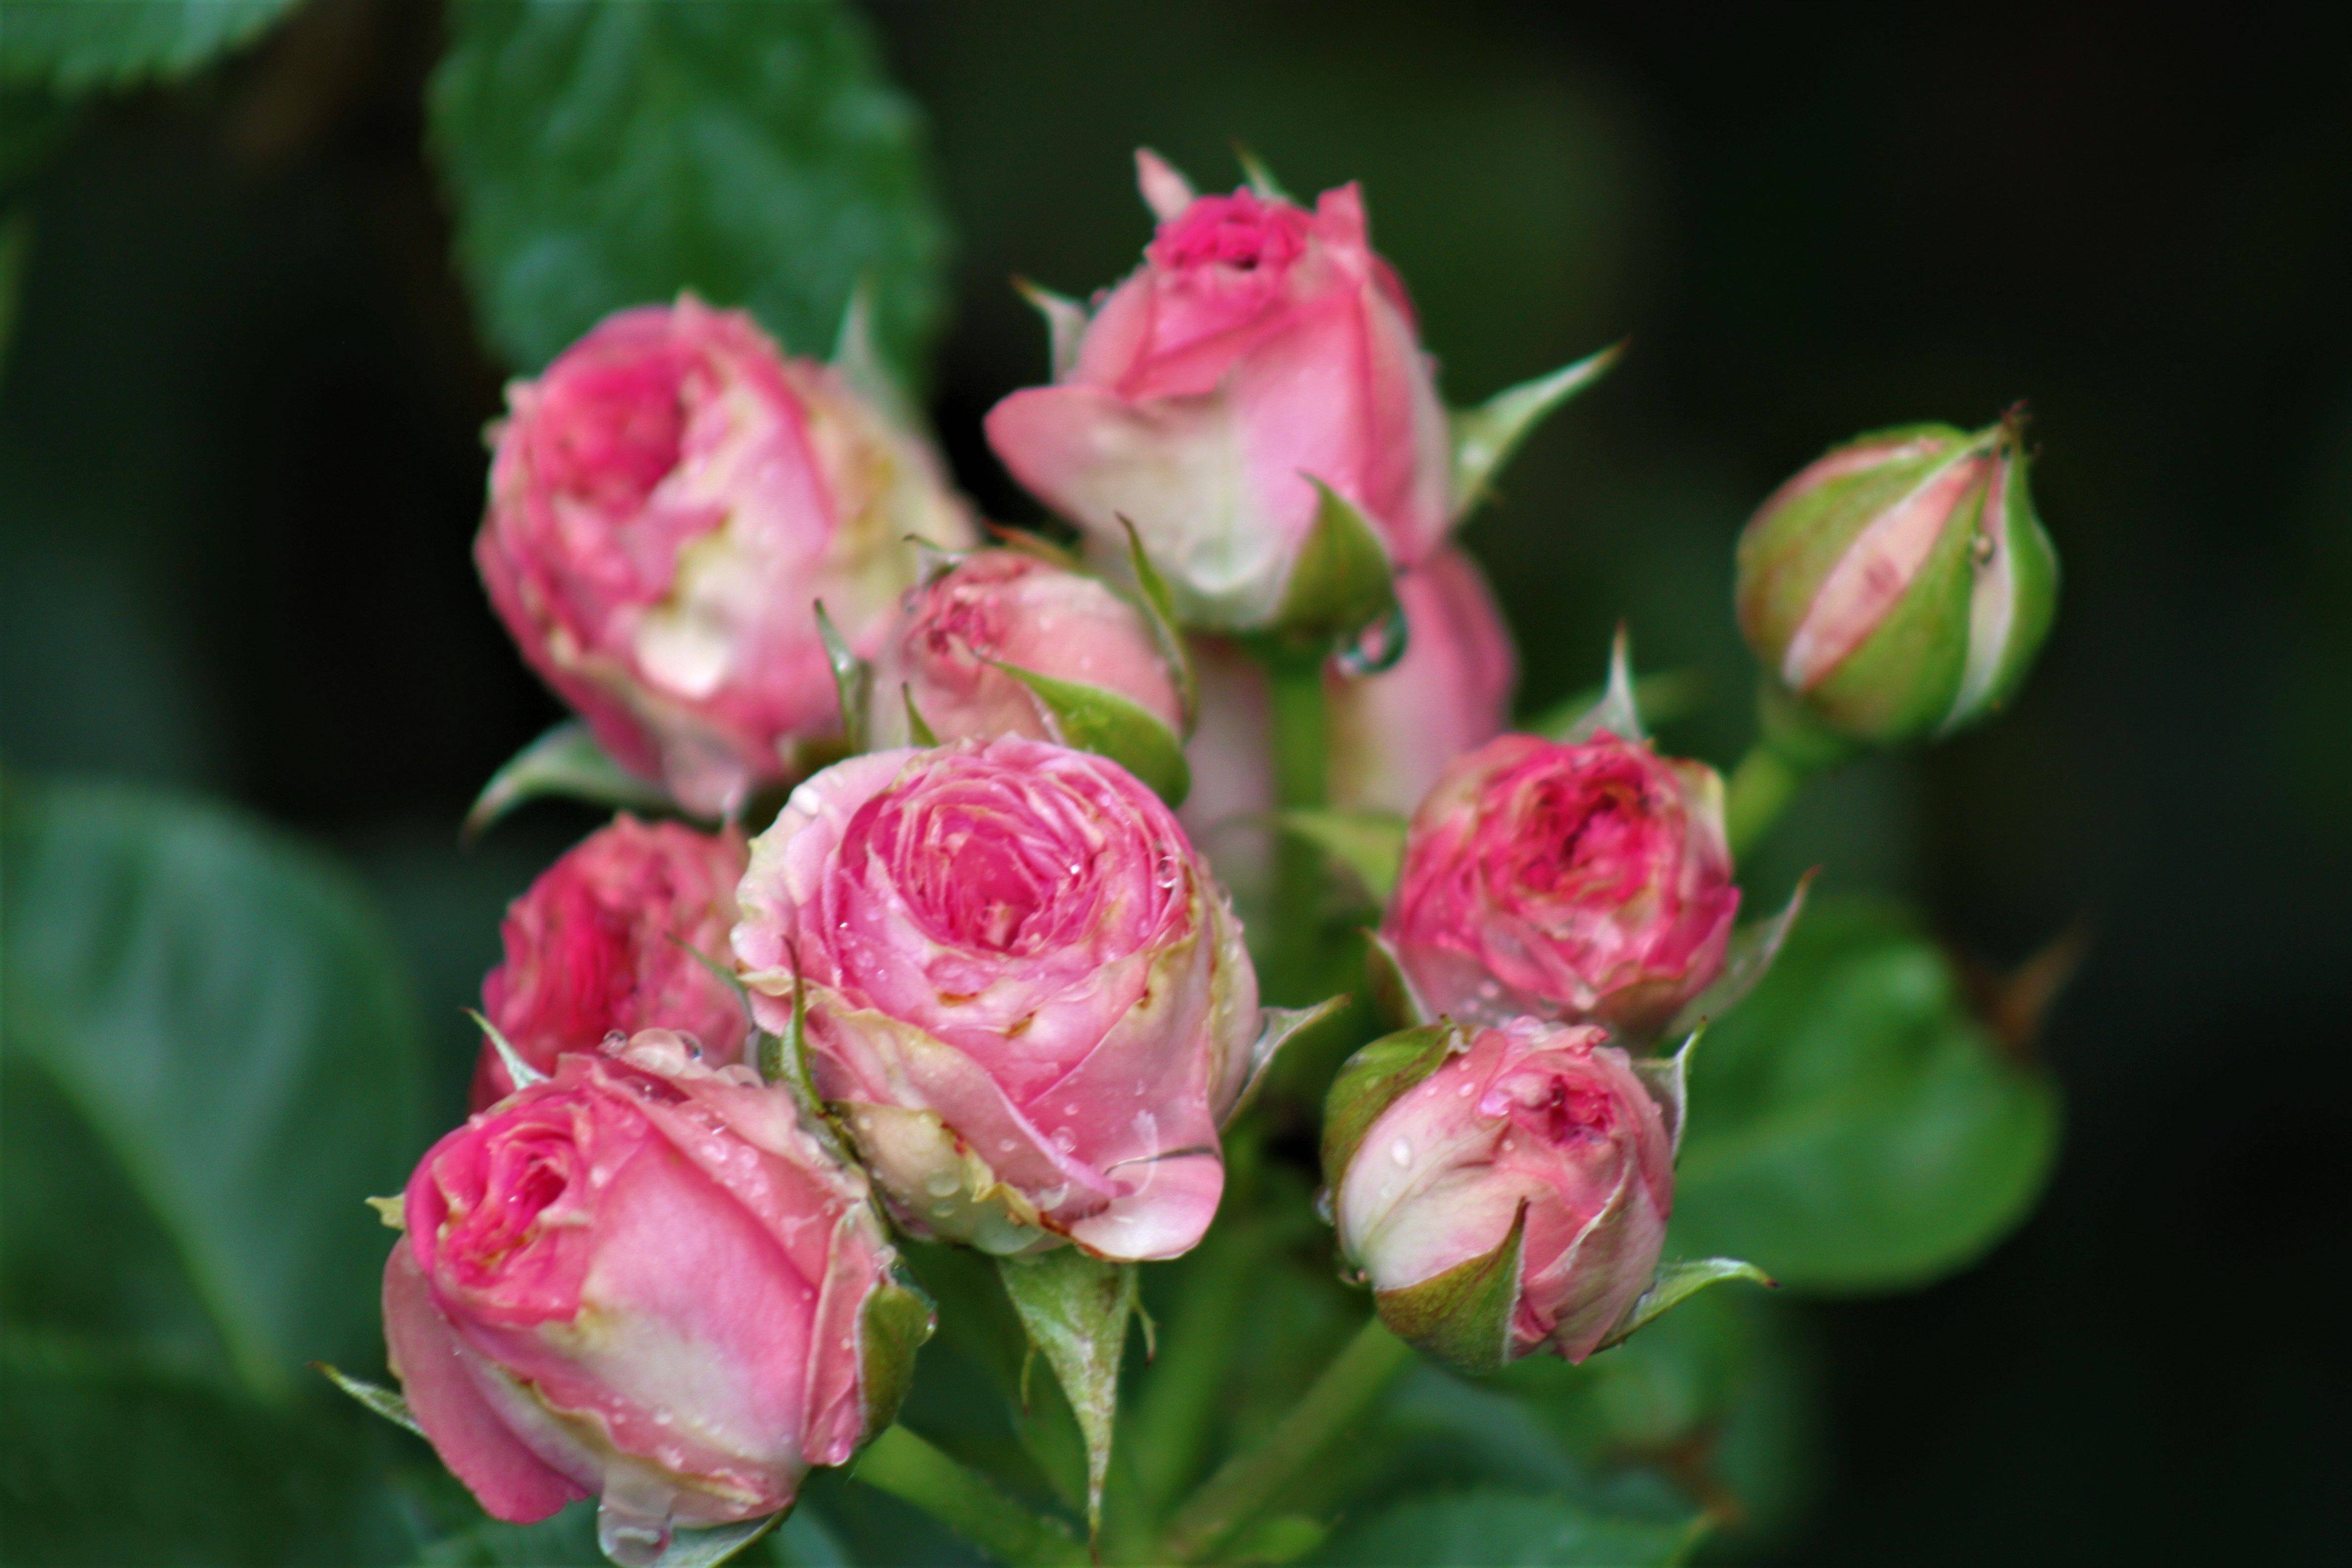 Мими - Розовое удовольствие - 123 фото